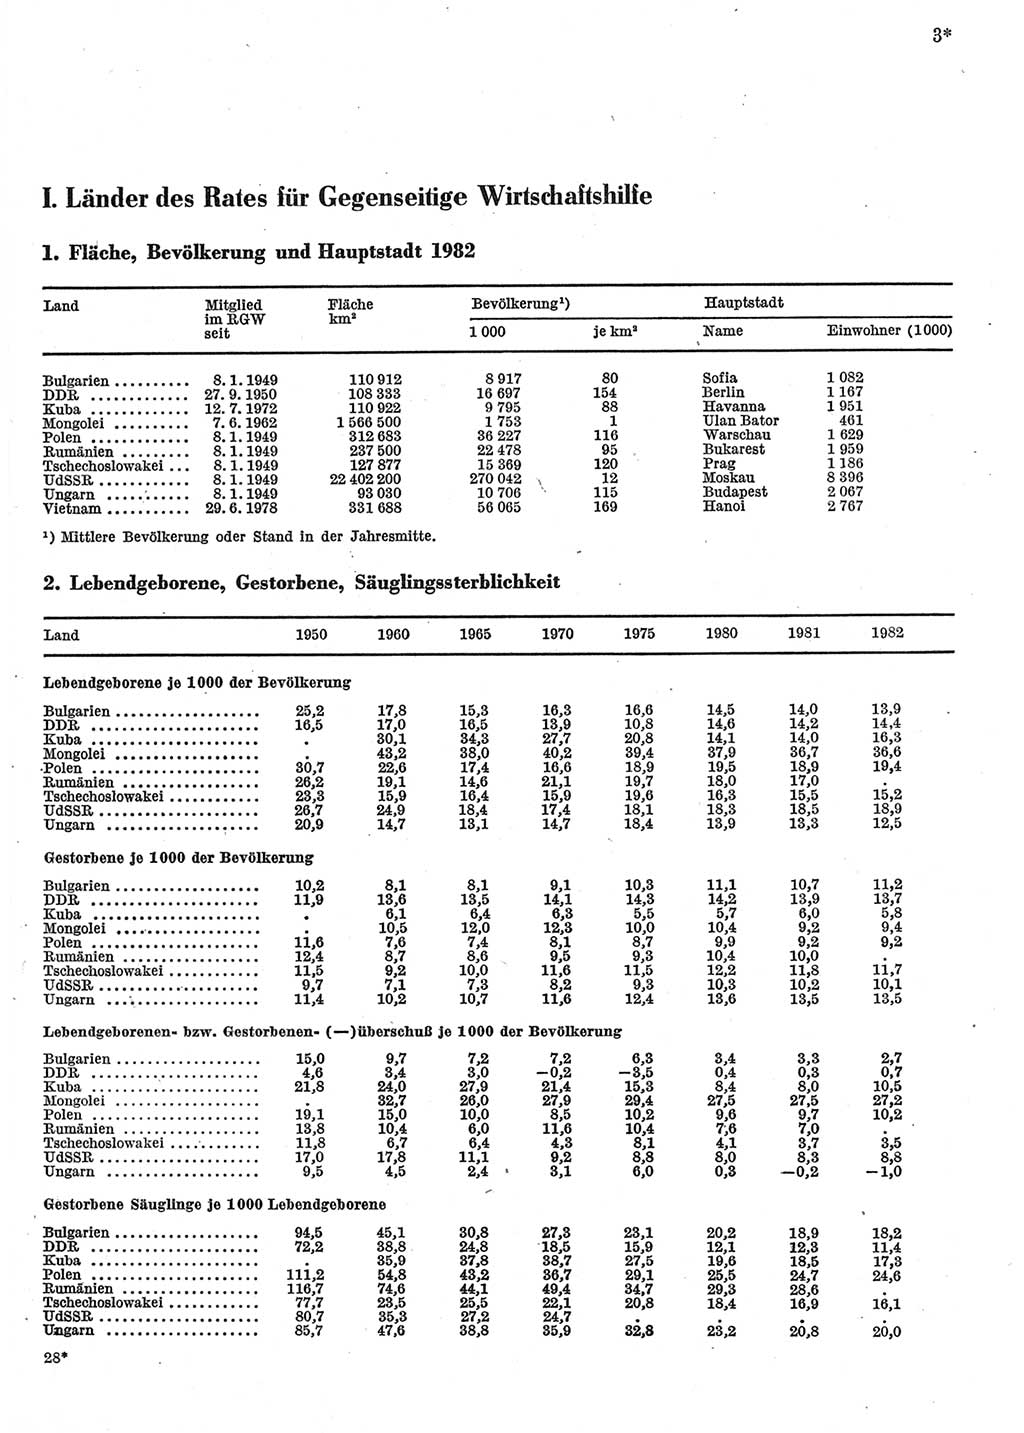 Statistisches Jahrbuch der Deutschen Demokratischen Republik (DDR) 1984, Seite 3 (Stat. Jb. DDR 1984, S. 3)